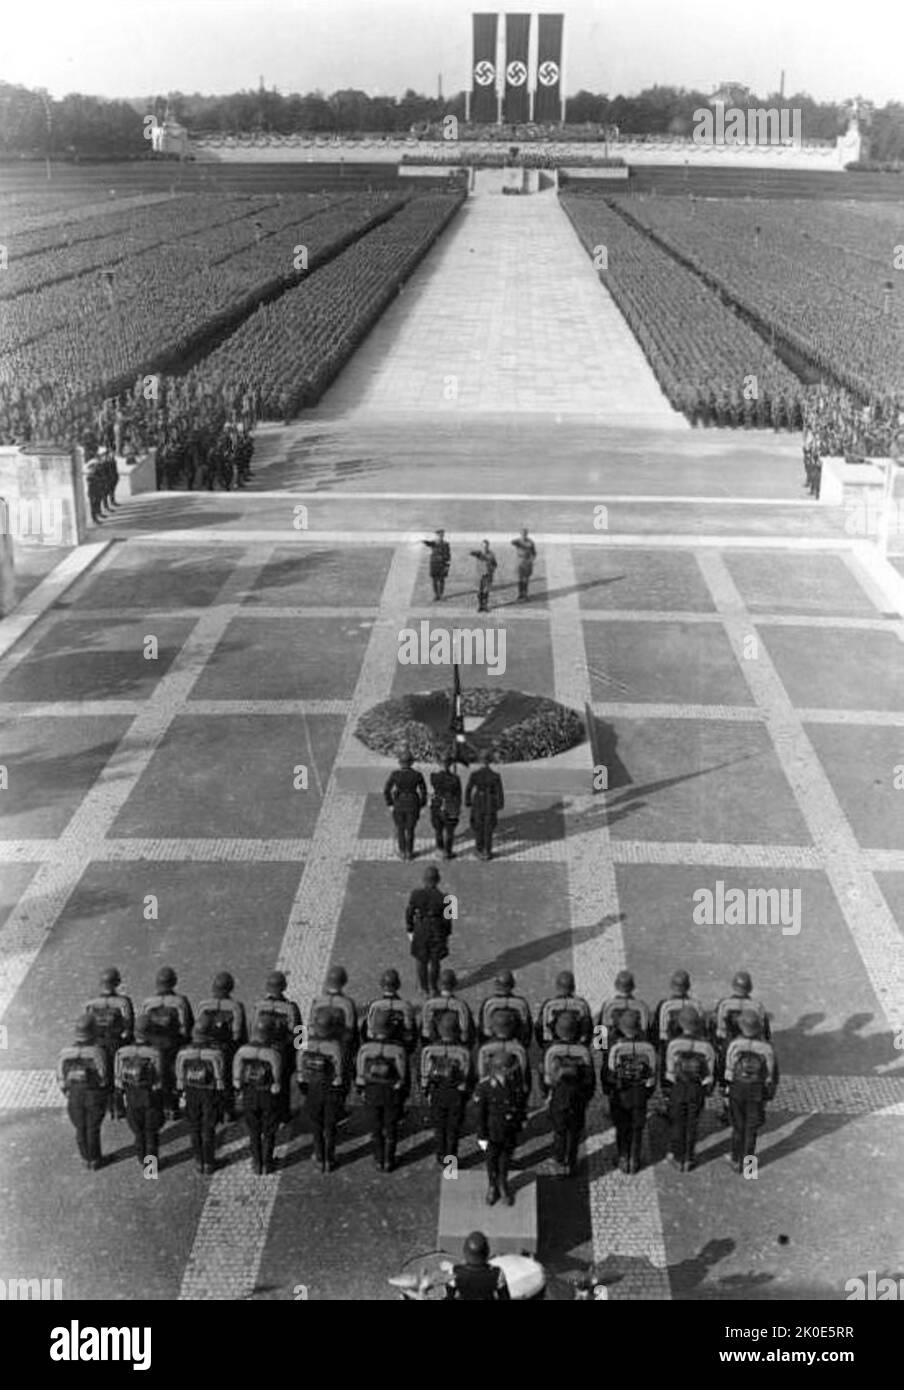 Die Nürnberger Kundgebung war die jährliche Kundgebung der Nazi-Partei in Deutschland, die von 1923 bis 1938 stattfand. Es handelte sich um große Propagandaveranstaltungen der Nazis, insbesondere nach dem Aufstieg Adolf Hitlers zur Macht im Jahr 1933. Diese Ereignisse fanden von 1933 bis 1938 auf dem Gelände der Reichsparteienversammlung in Nürnberg statt. Stockfoto